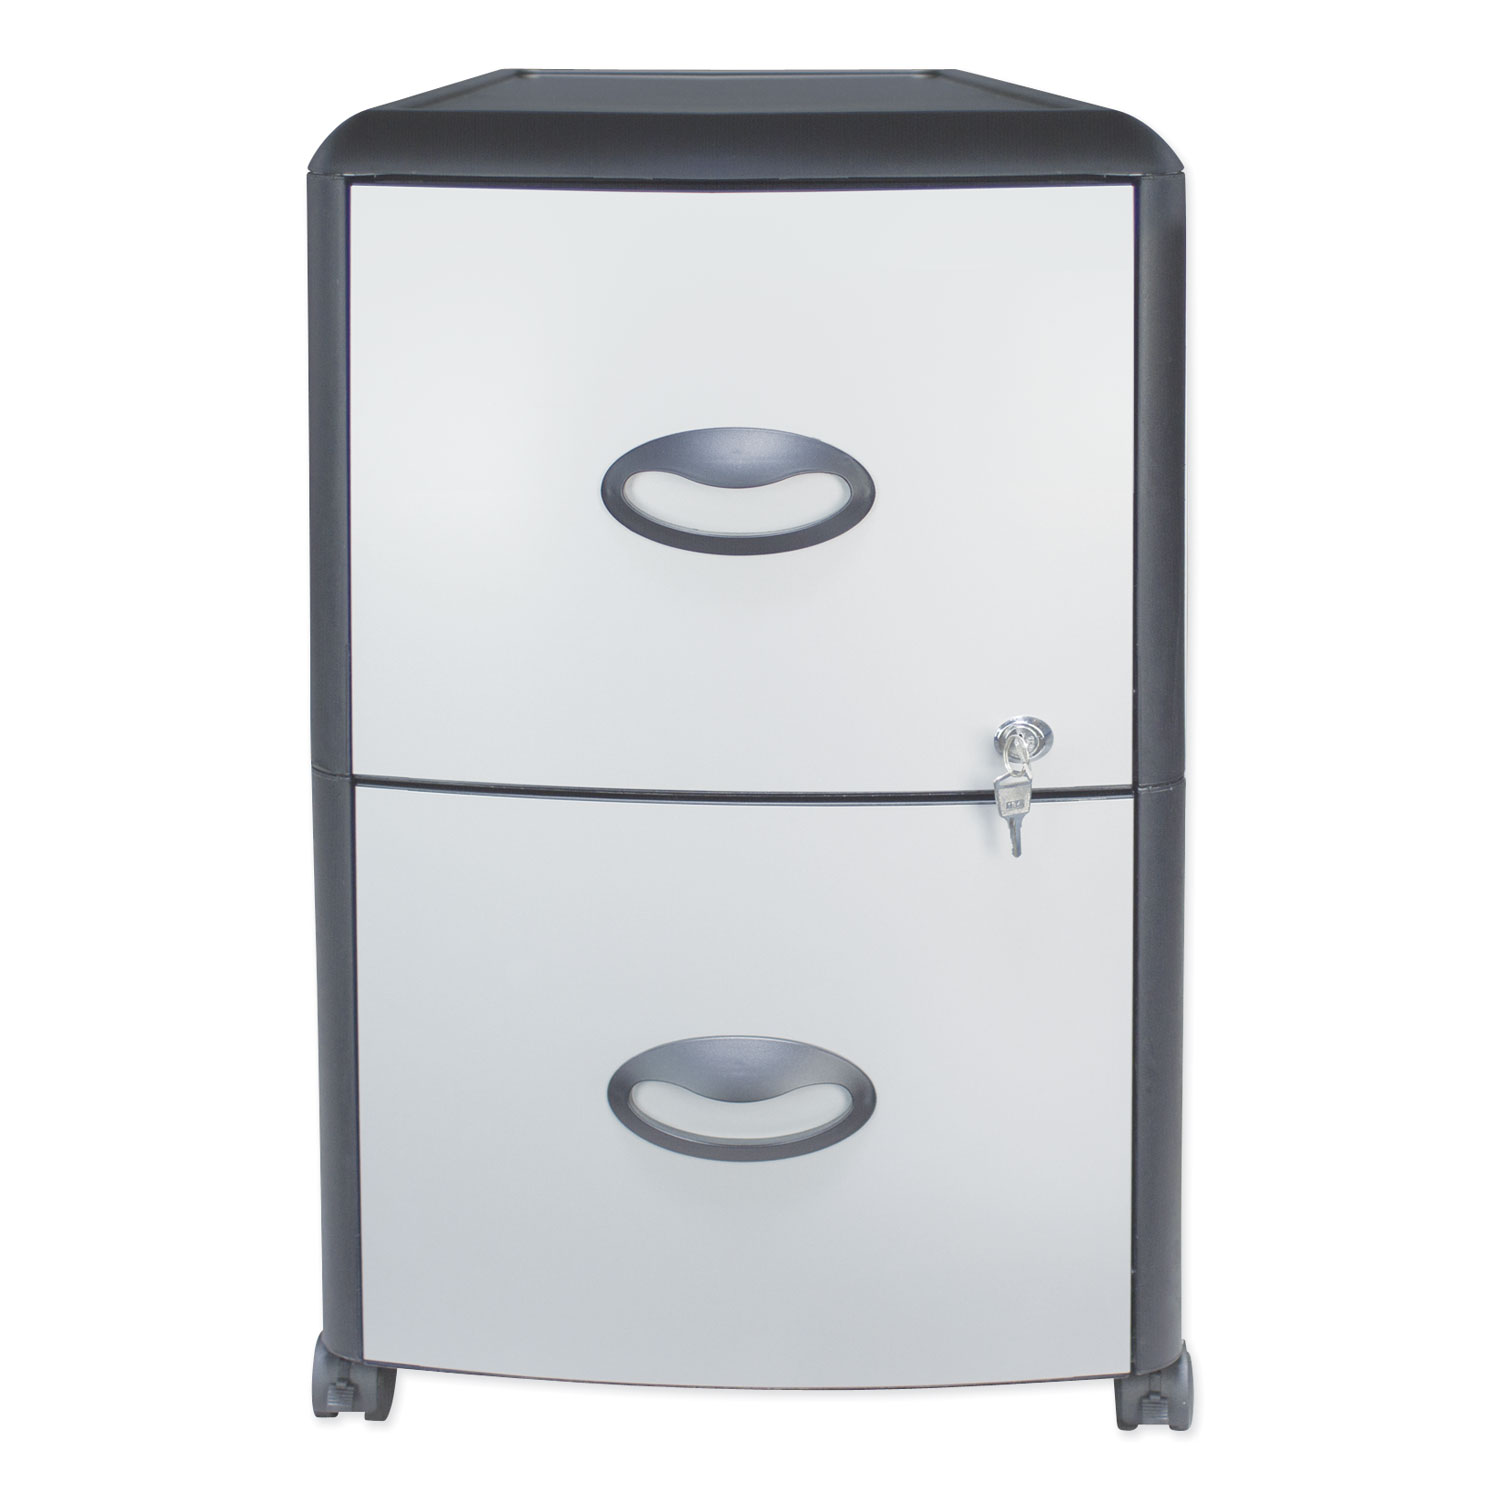  Storex 61351U01C Two-Drawer Mobile Filing Cabinet, Metal Siding, 19w x 15d x 23h, Silver/Black (STX61351U01C) 